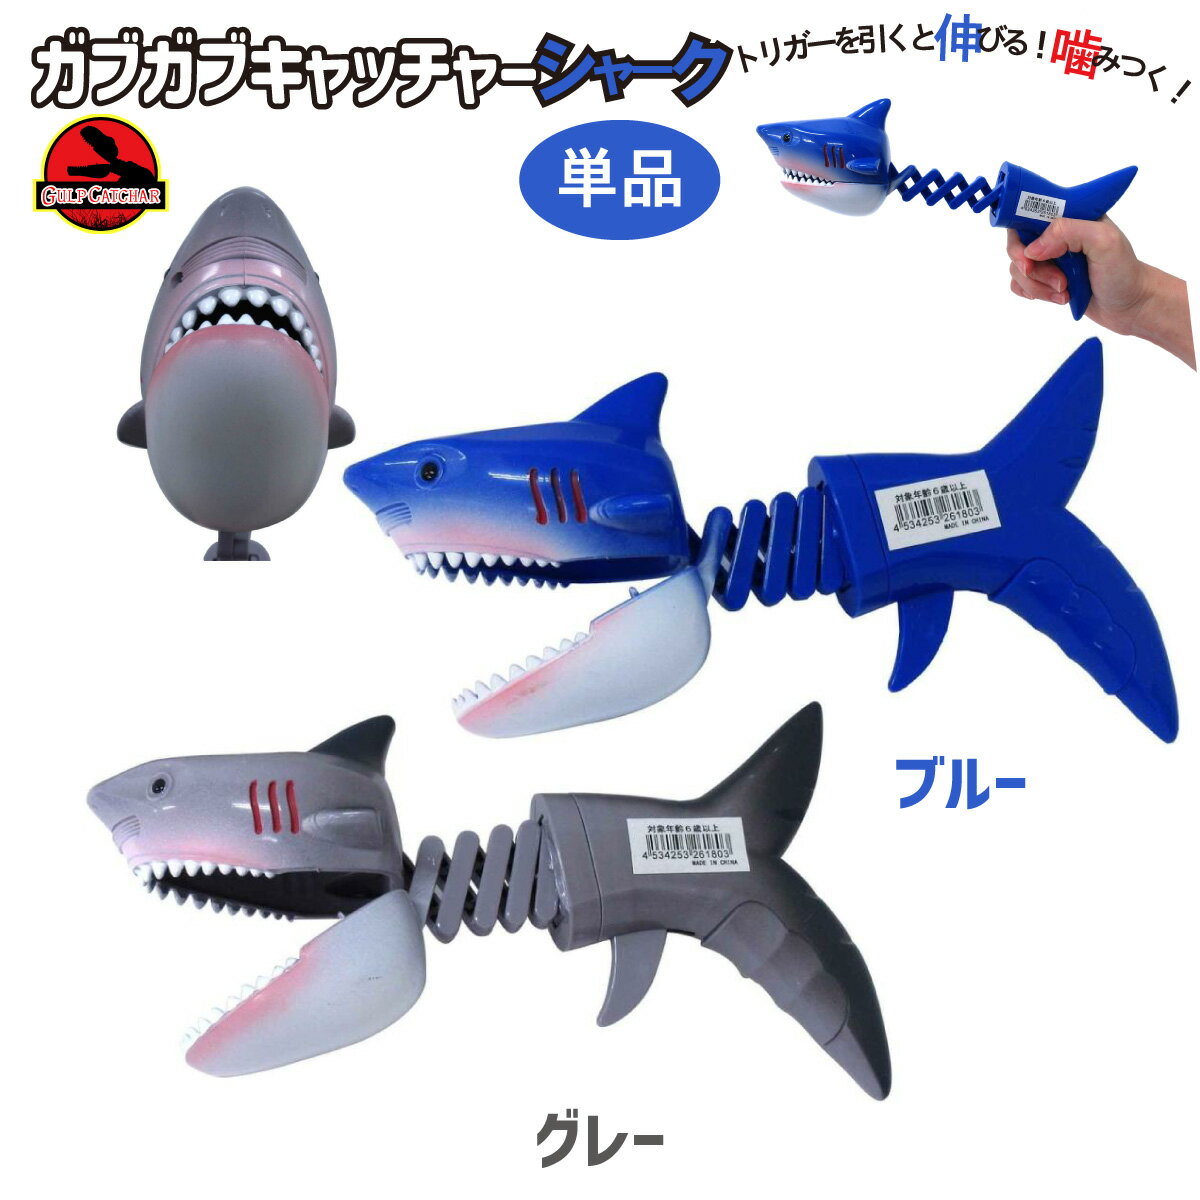 ガブガブキャッチャー シャーク 2色 サメ アームの玩具 誕生日 クリスマス プレゼント ギフト 206-180